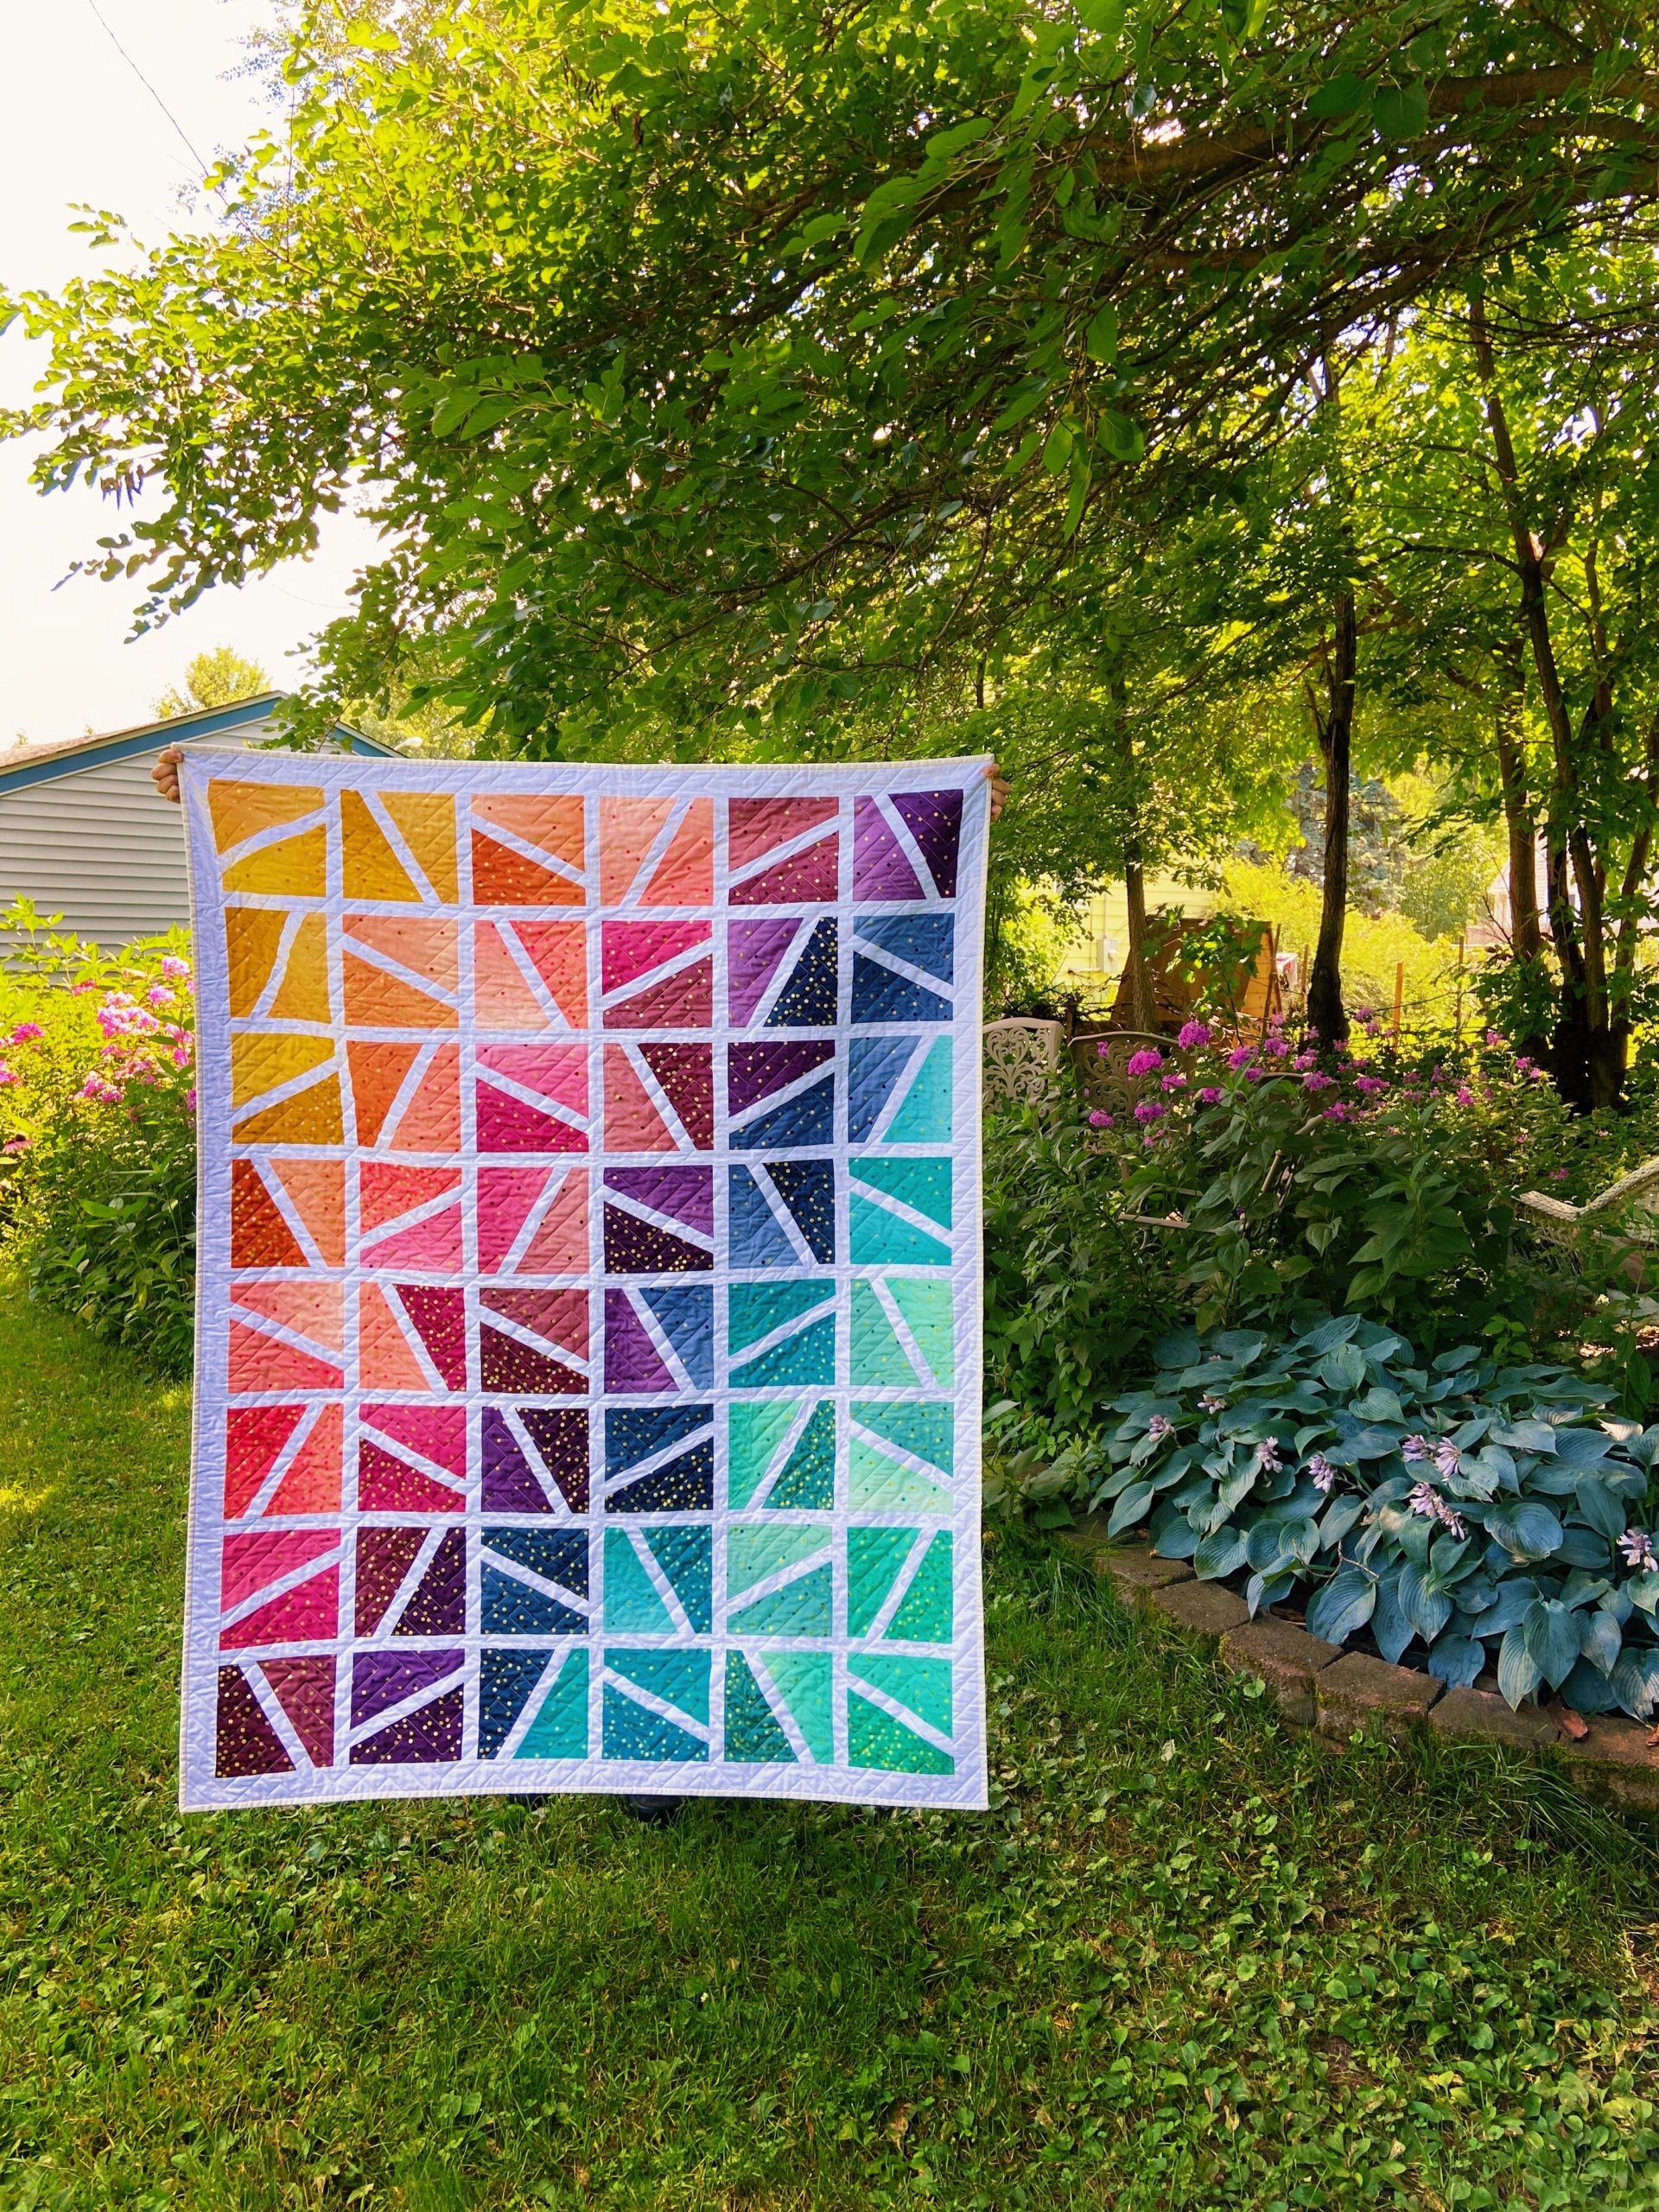 Unique geometric quilt designs by Kate Brown @ SparkleStash Designs - rainbow colored geometric design quilt